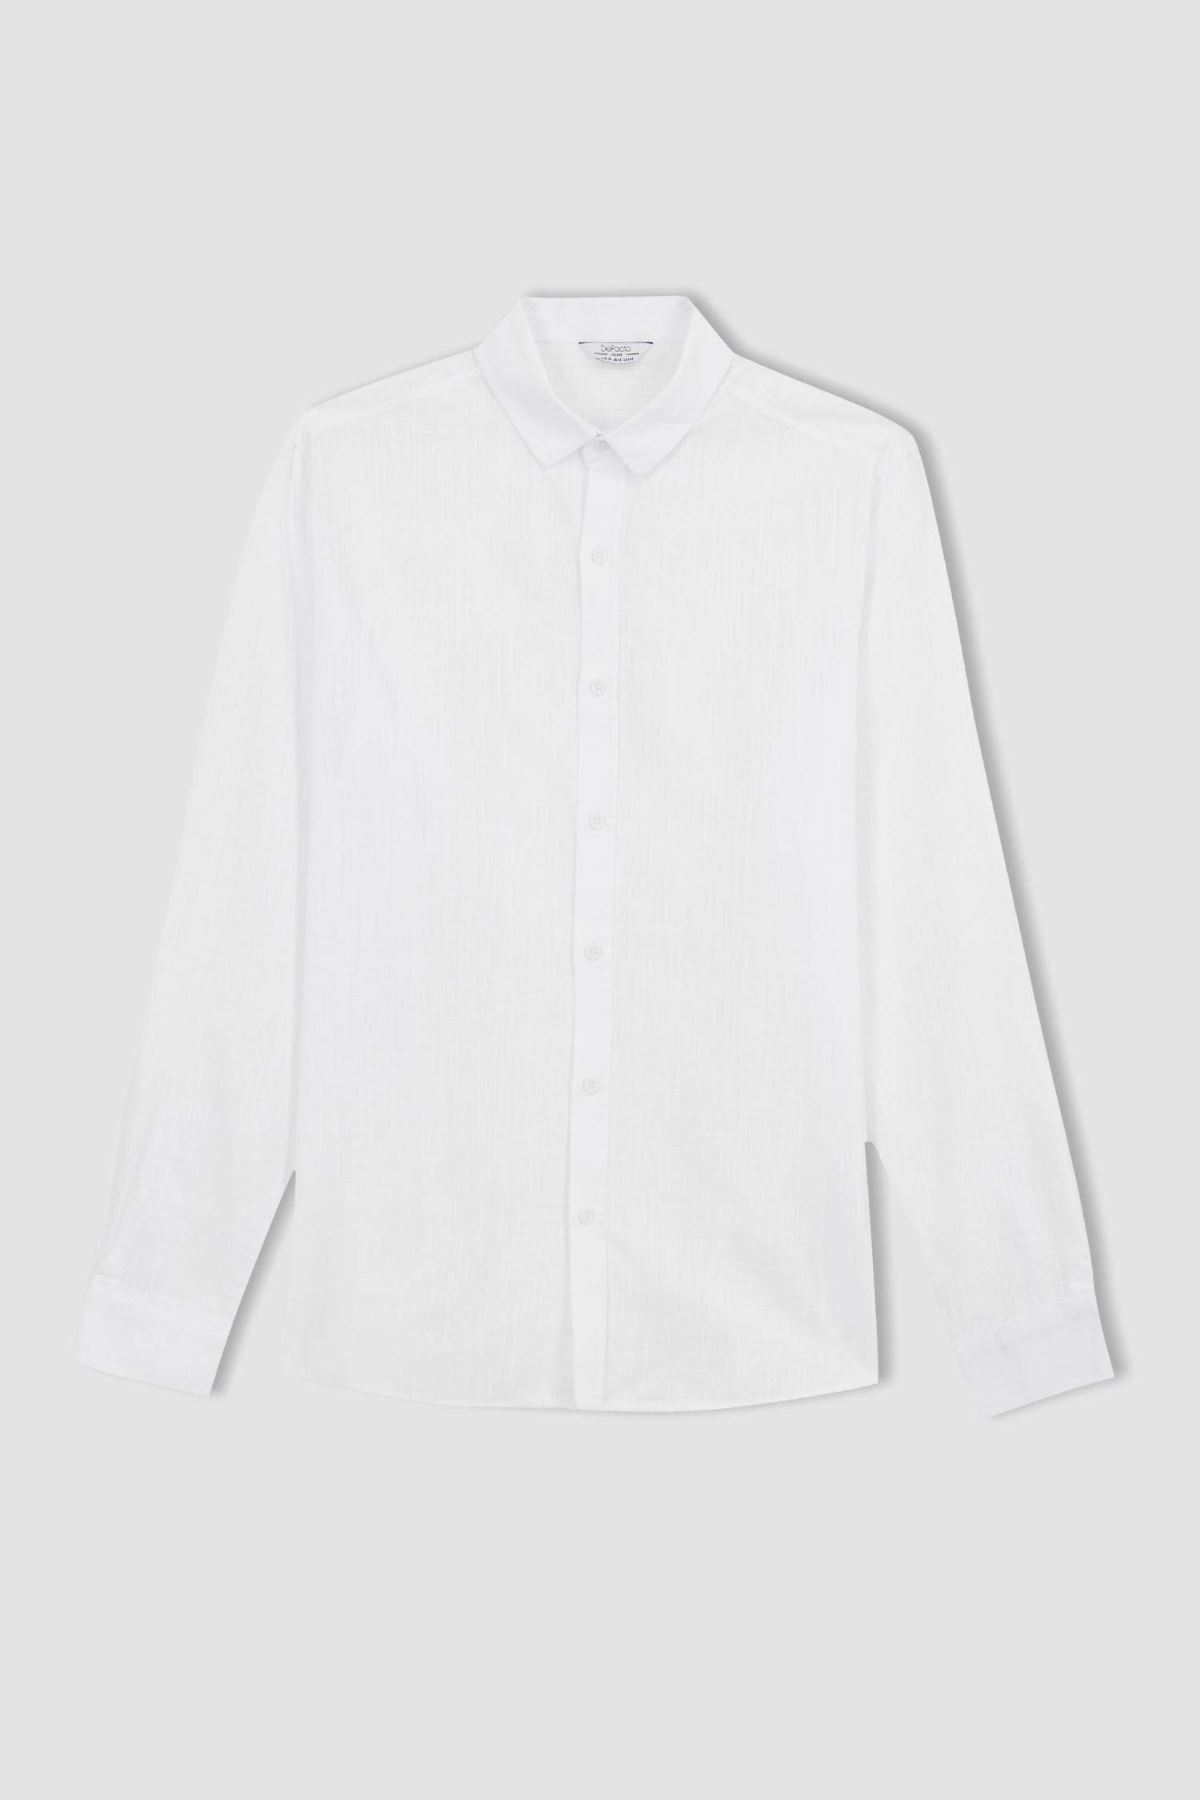 Defacto Erkek Beyaz Gömlek - R1680AZ/WT34